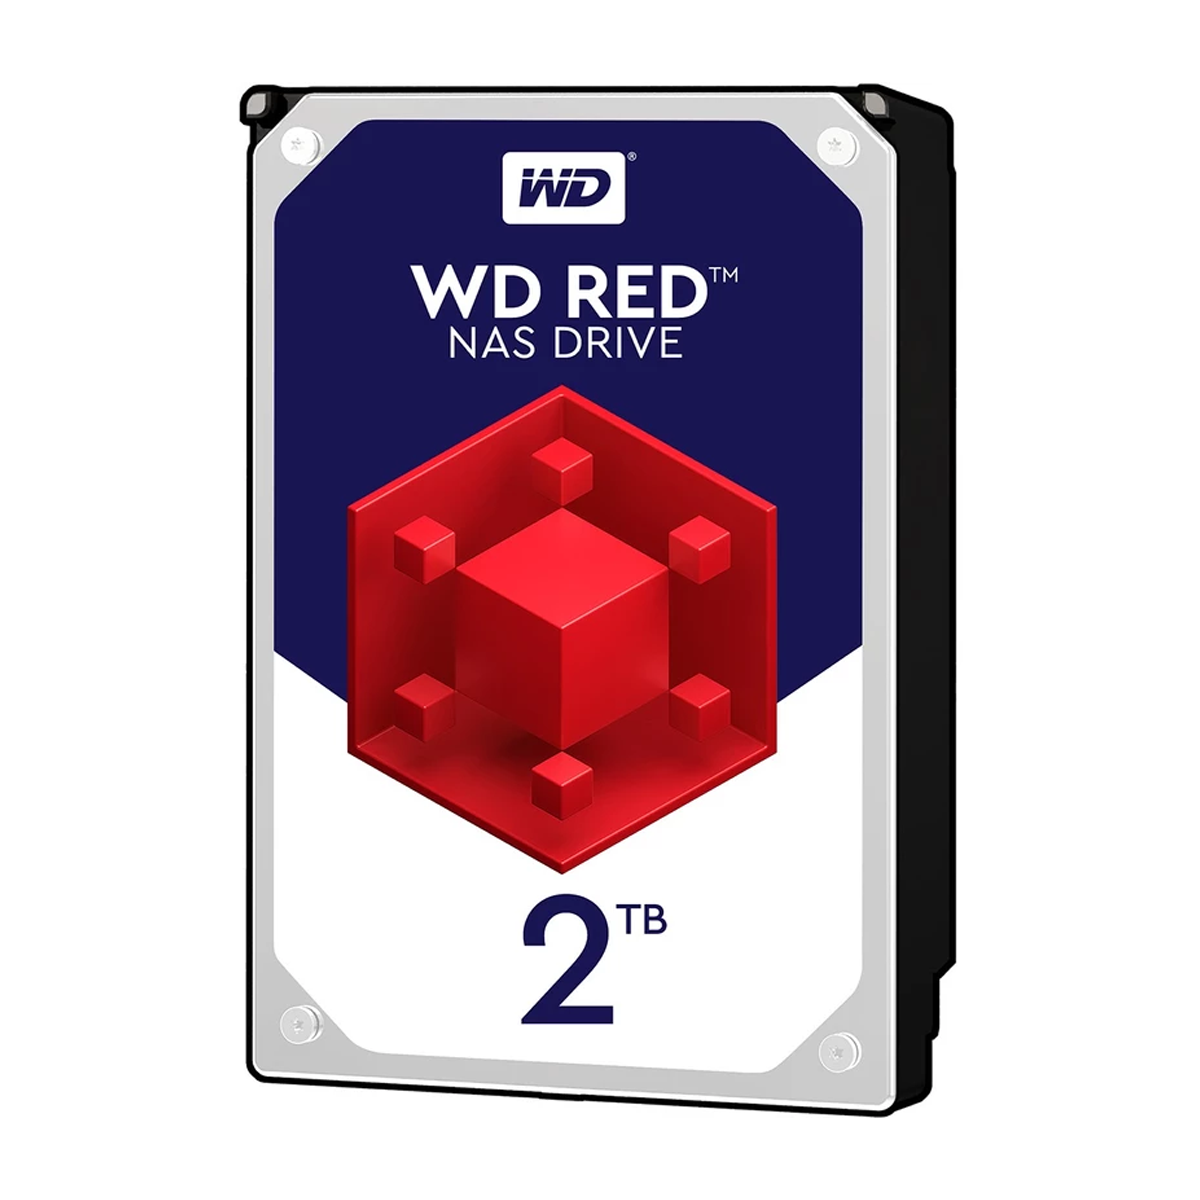 هارد دیسک اینترنال وسترن دیجیتال مدل Red WD20EFRX ظرفیت 2 ترابایت